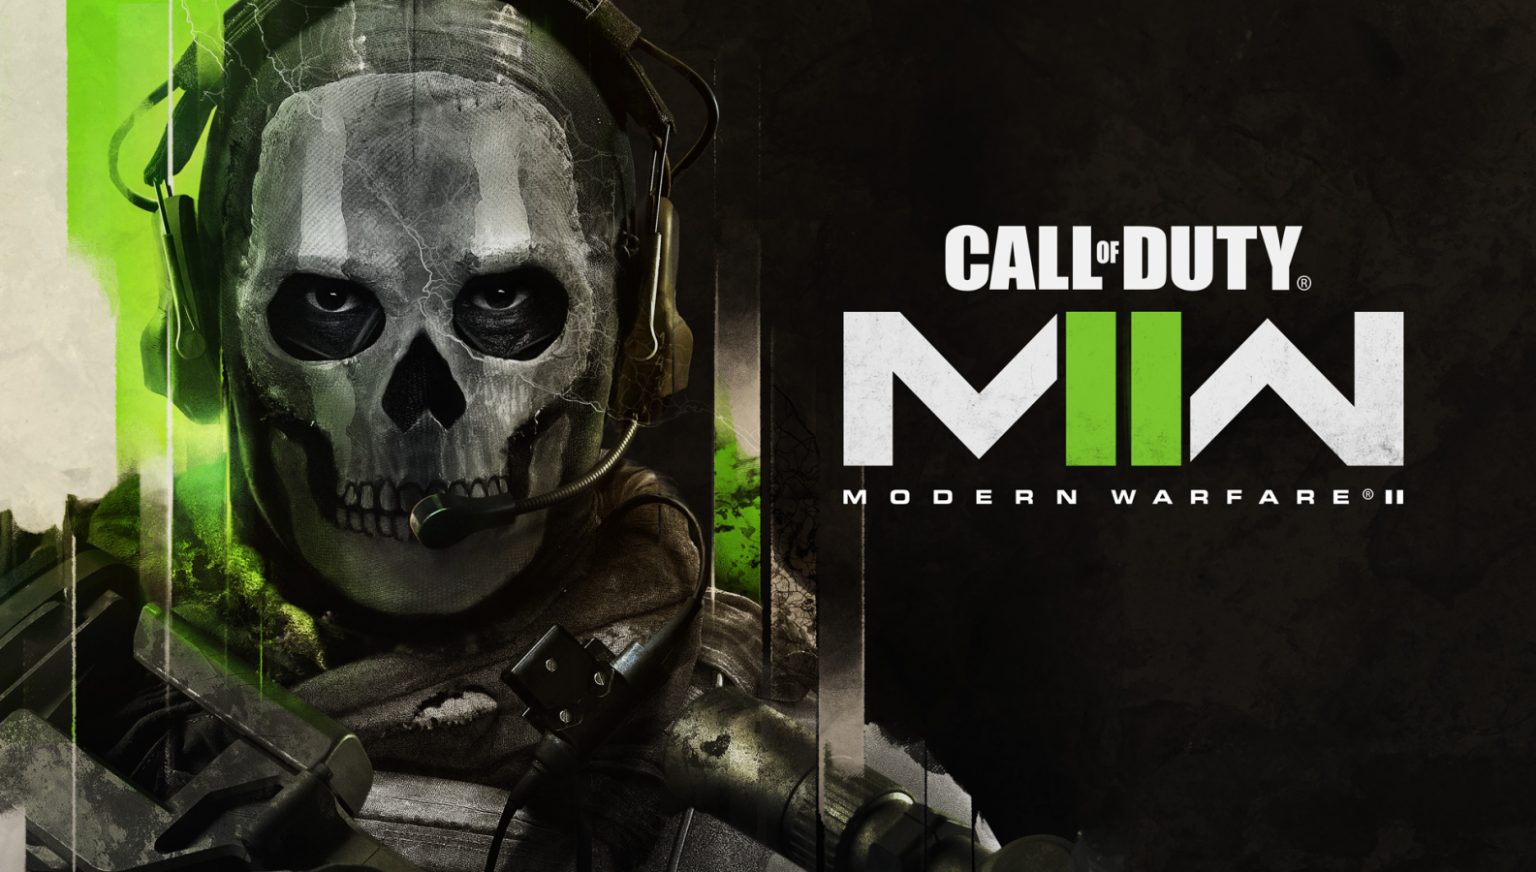 اکتیویژن با انتشار تیزری از ابهام تاریخ انتشار Call of Duty: Modern Warfare 2 پرده برداشت